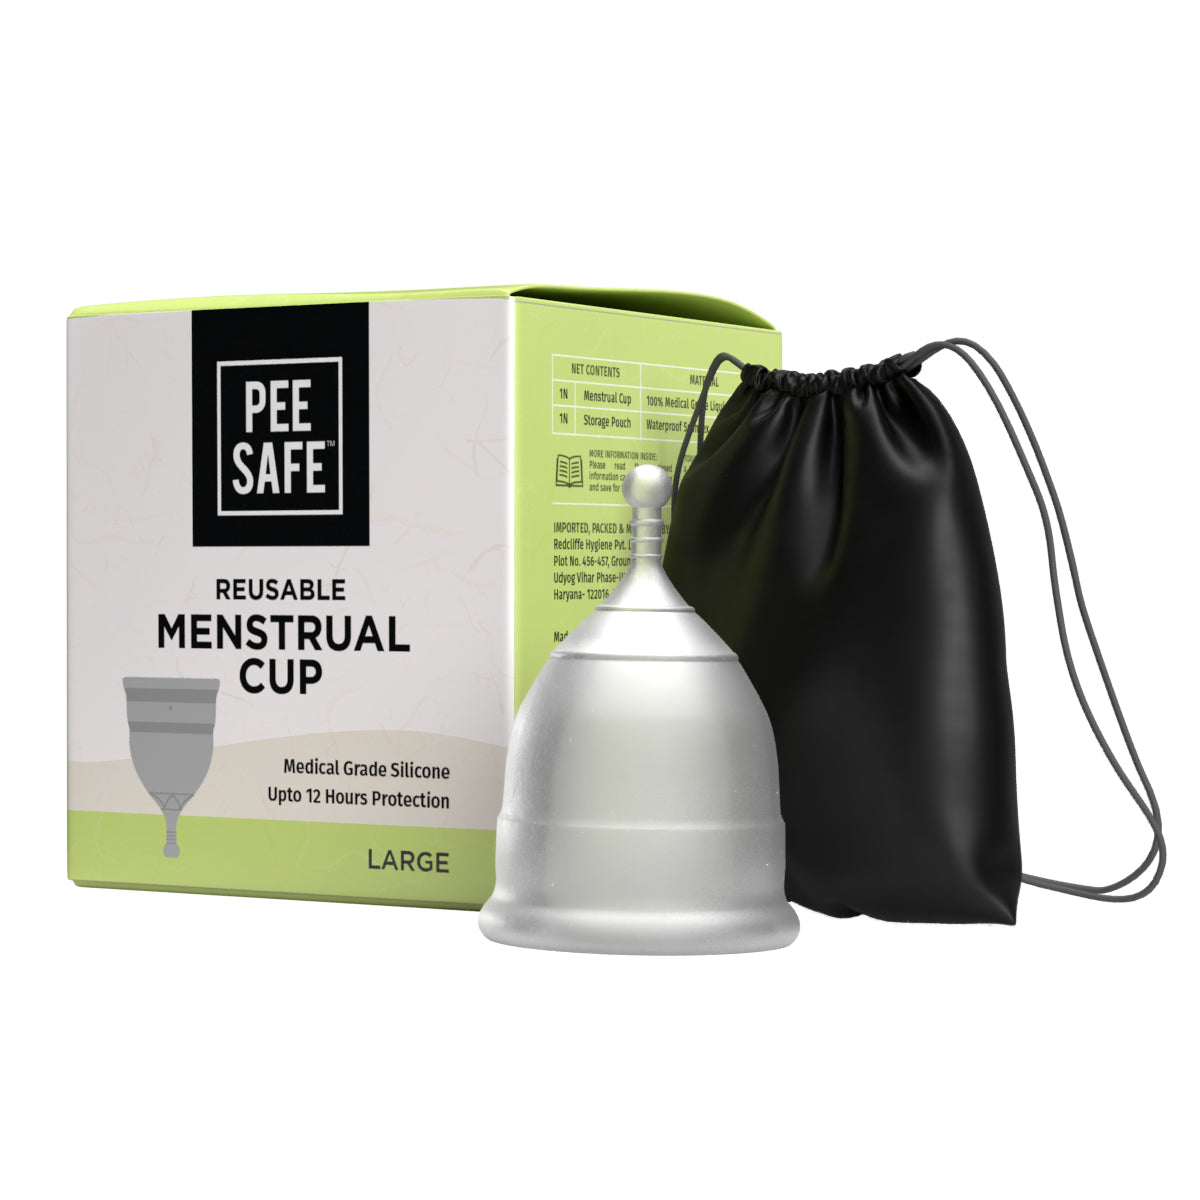 Pee Safe Reusable Menstrual Cup